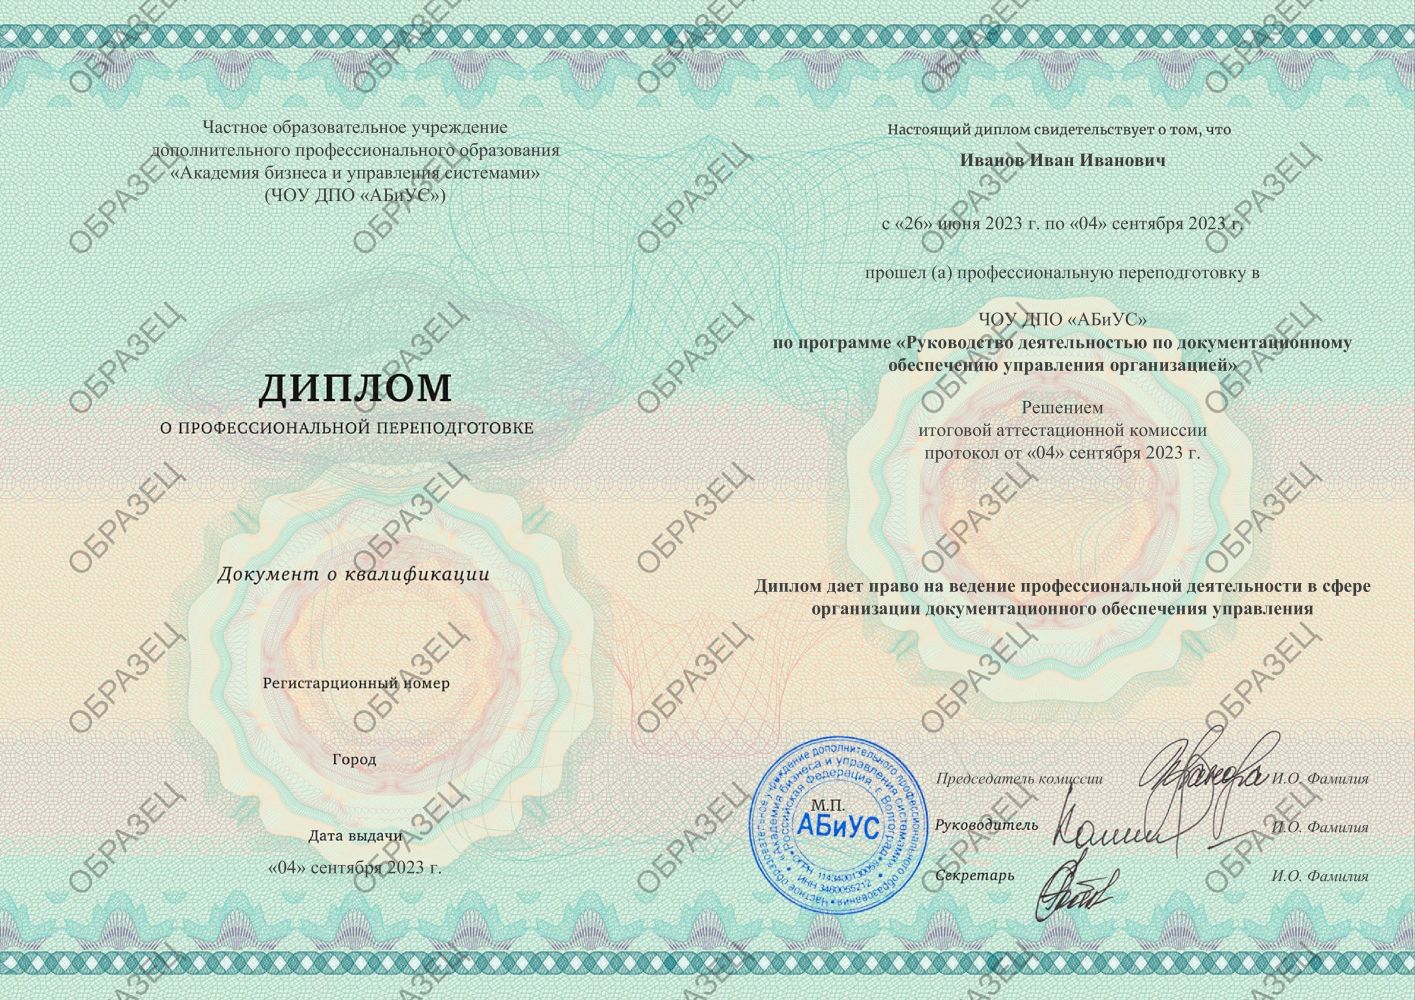 Диплом Руководство деятельностью по документационному обеспечению управления организацией 260 часов 11313 руб.